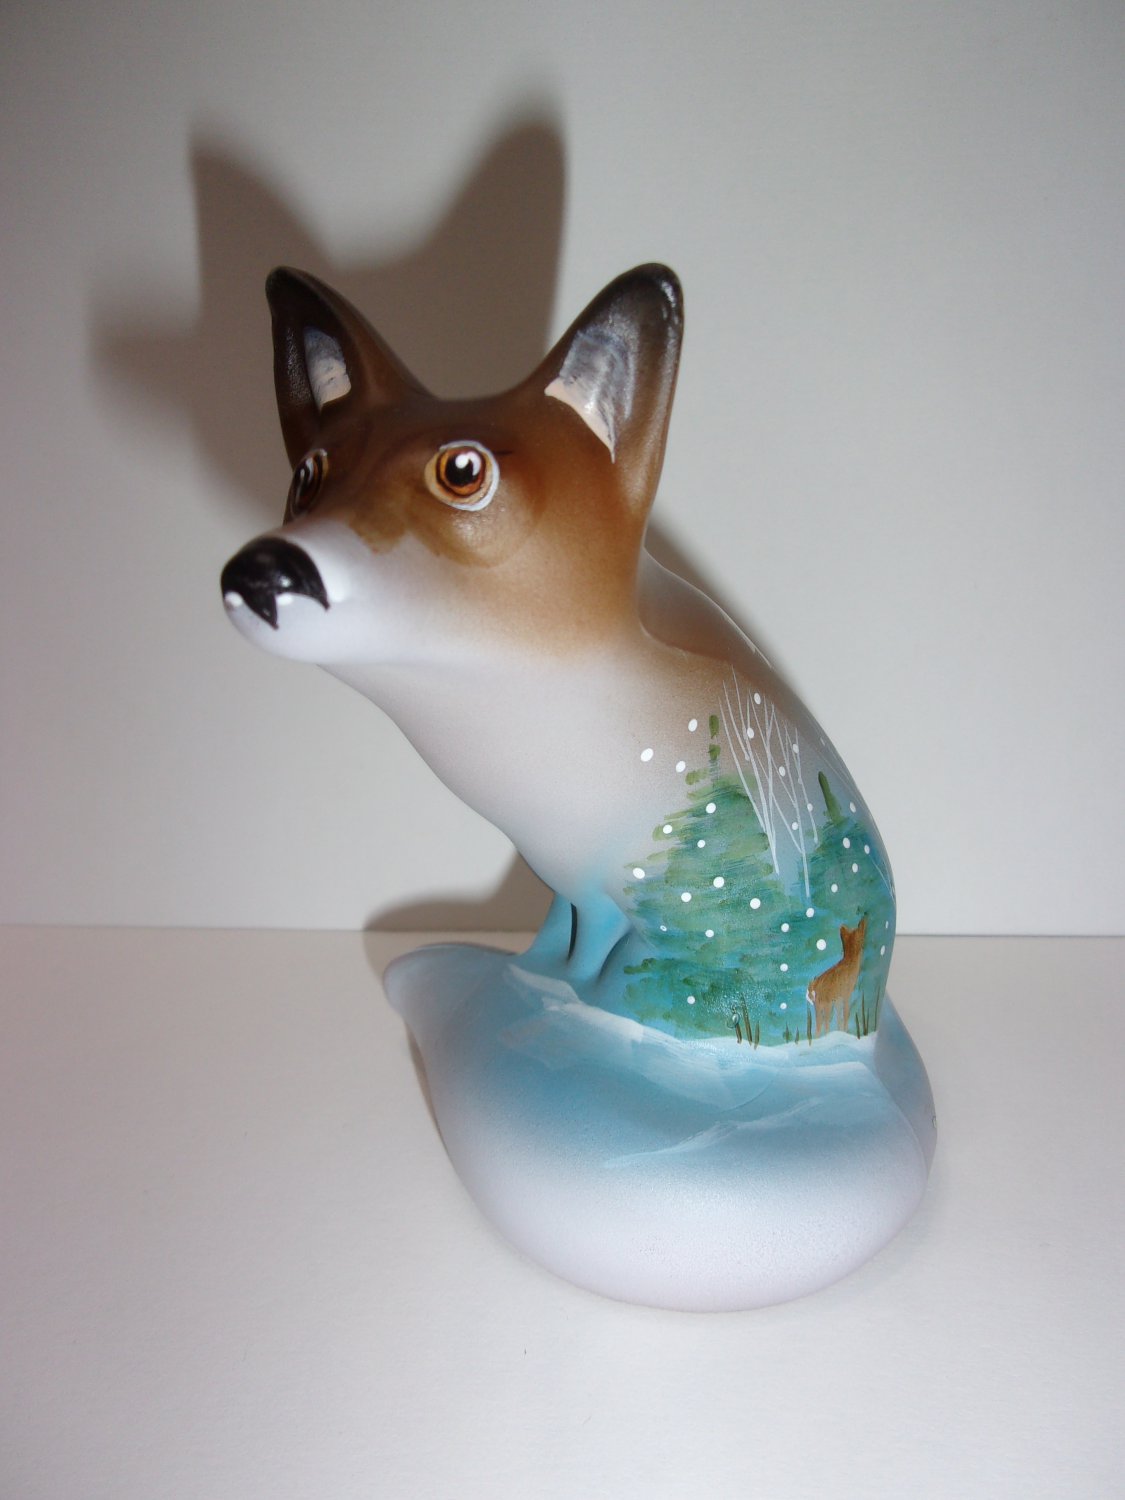 Fenton Glass Autumn Leaf Winter Deer Fox Figurine Ltd Ed GSE by Kim Barley #3/7